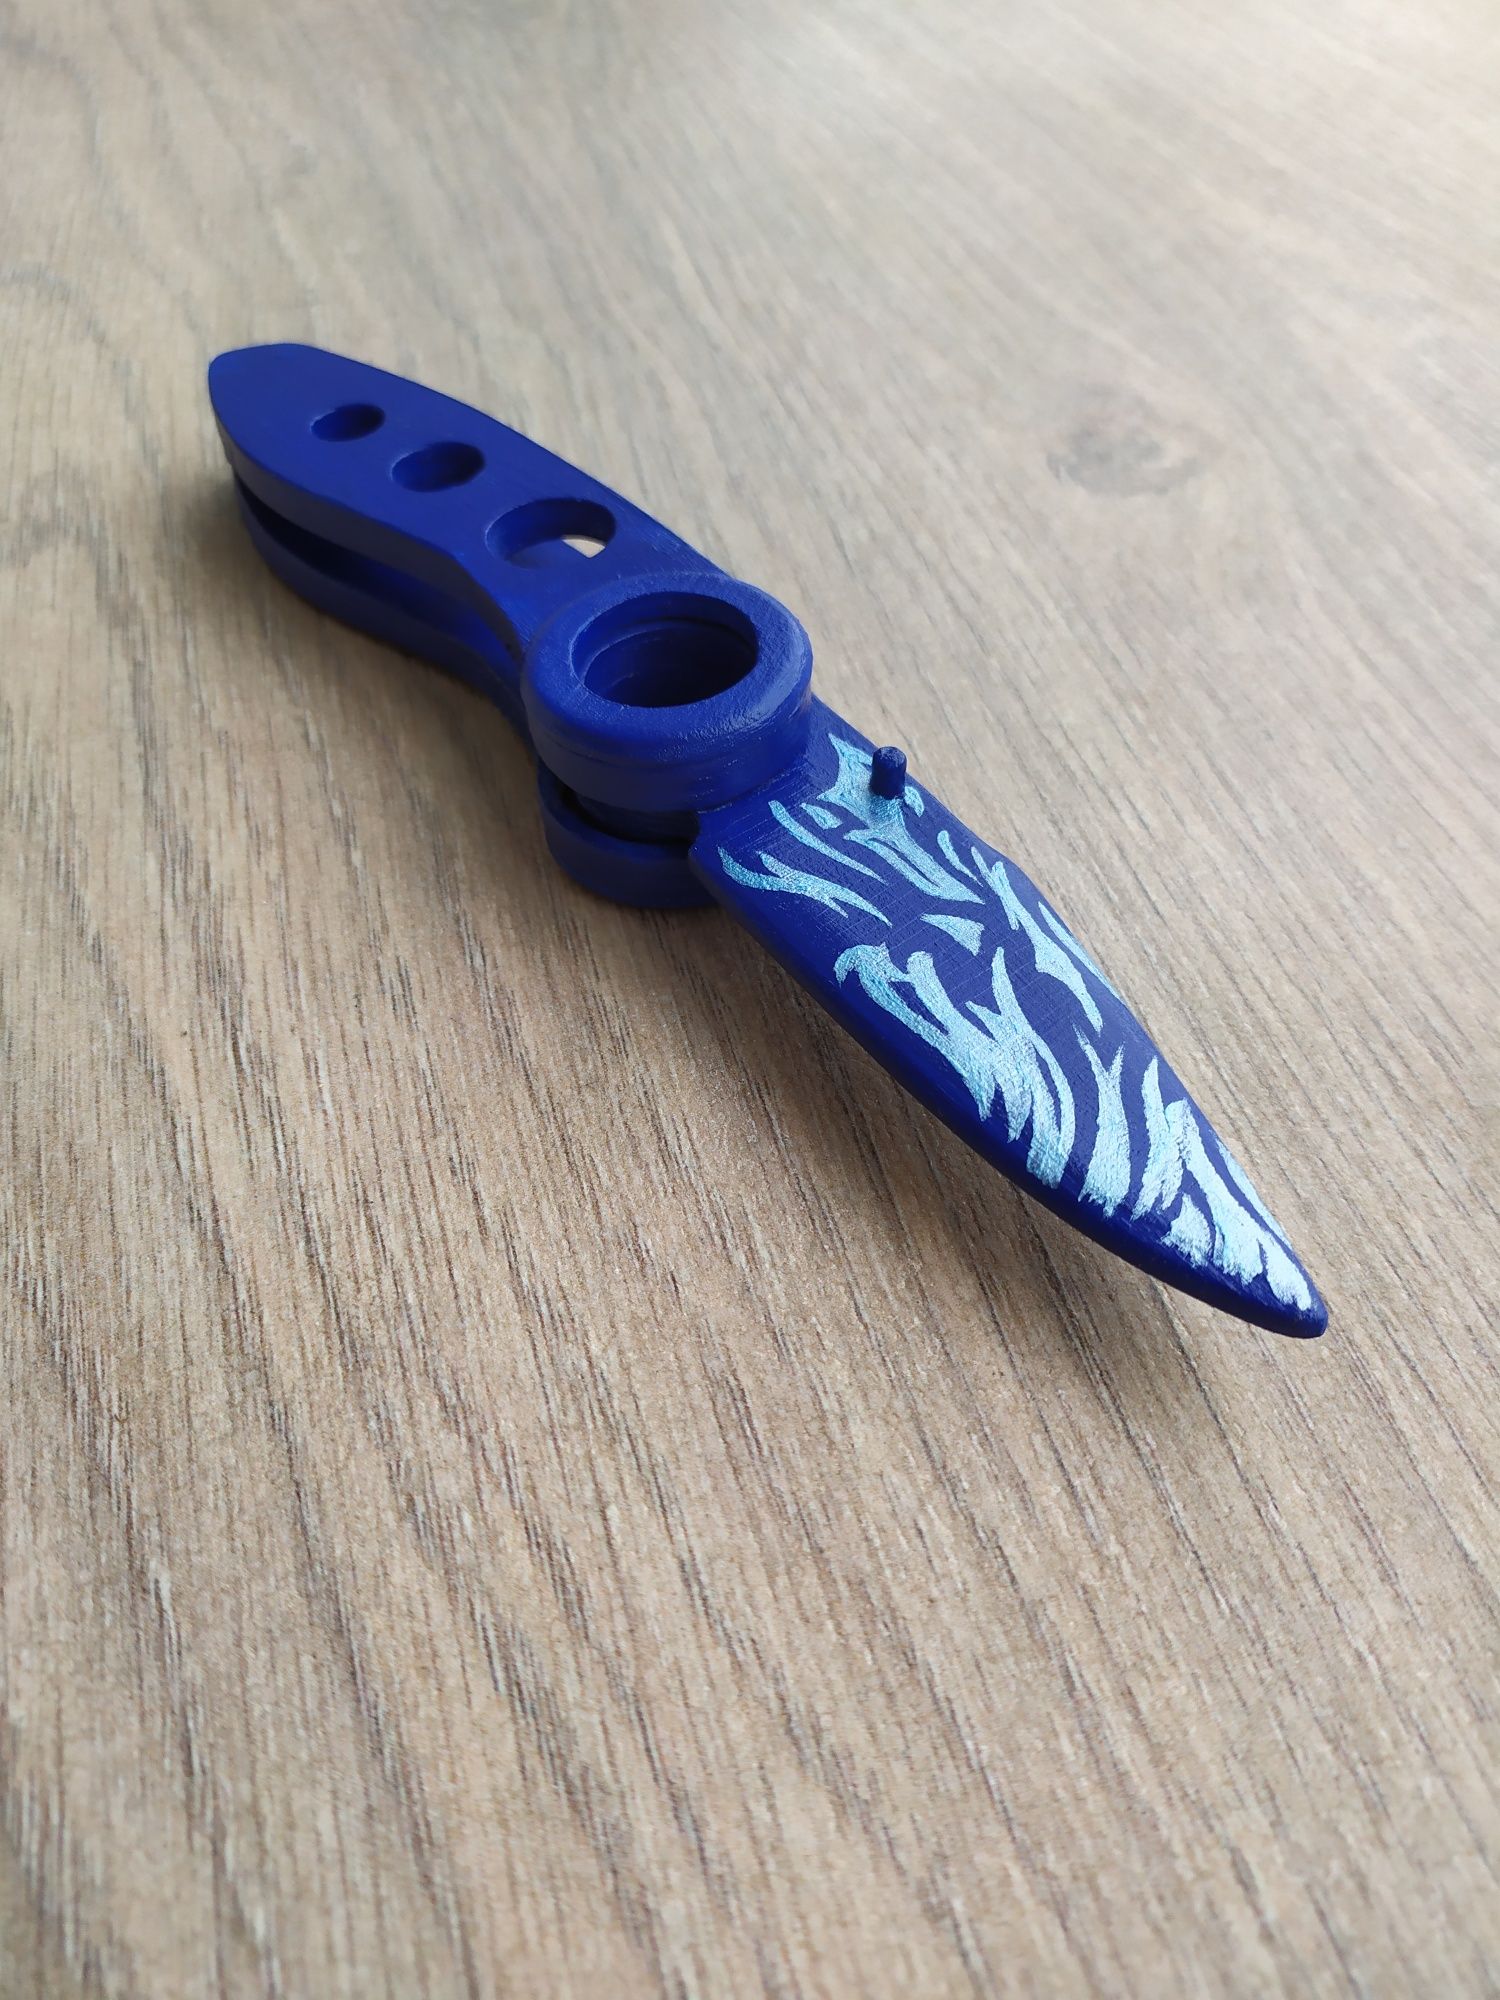 Деревянный макет складного ножа flipknife vortex standoff2